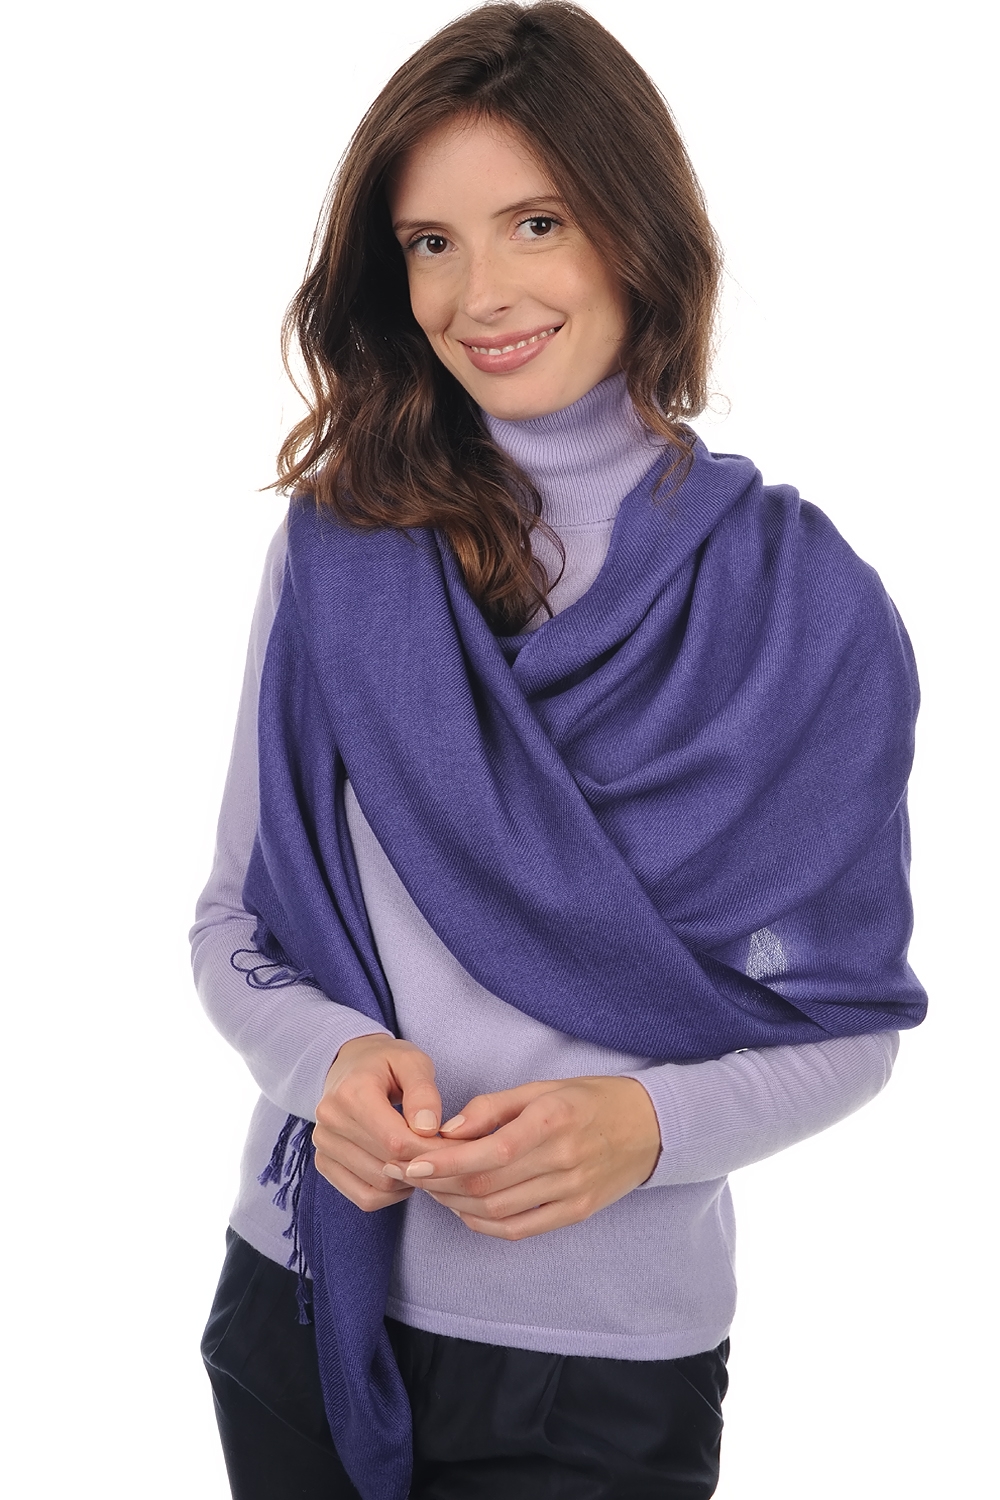 Cashmere accessories shawls diamant blue violette 201 cm x 71 cm